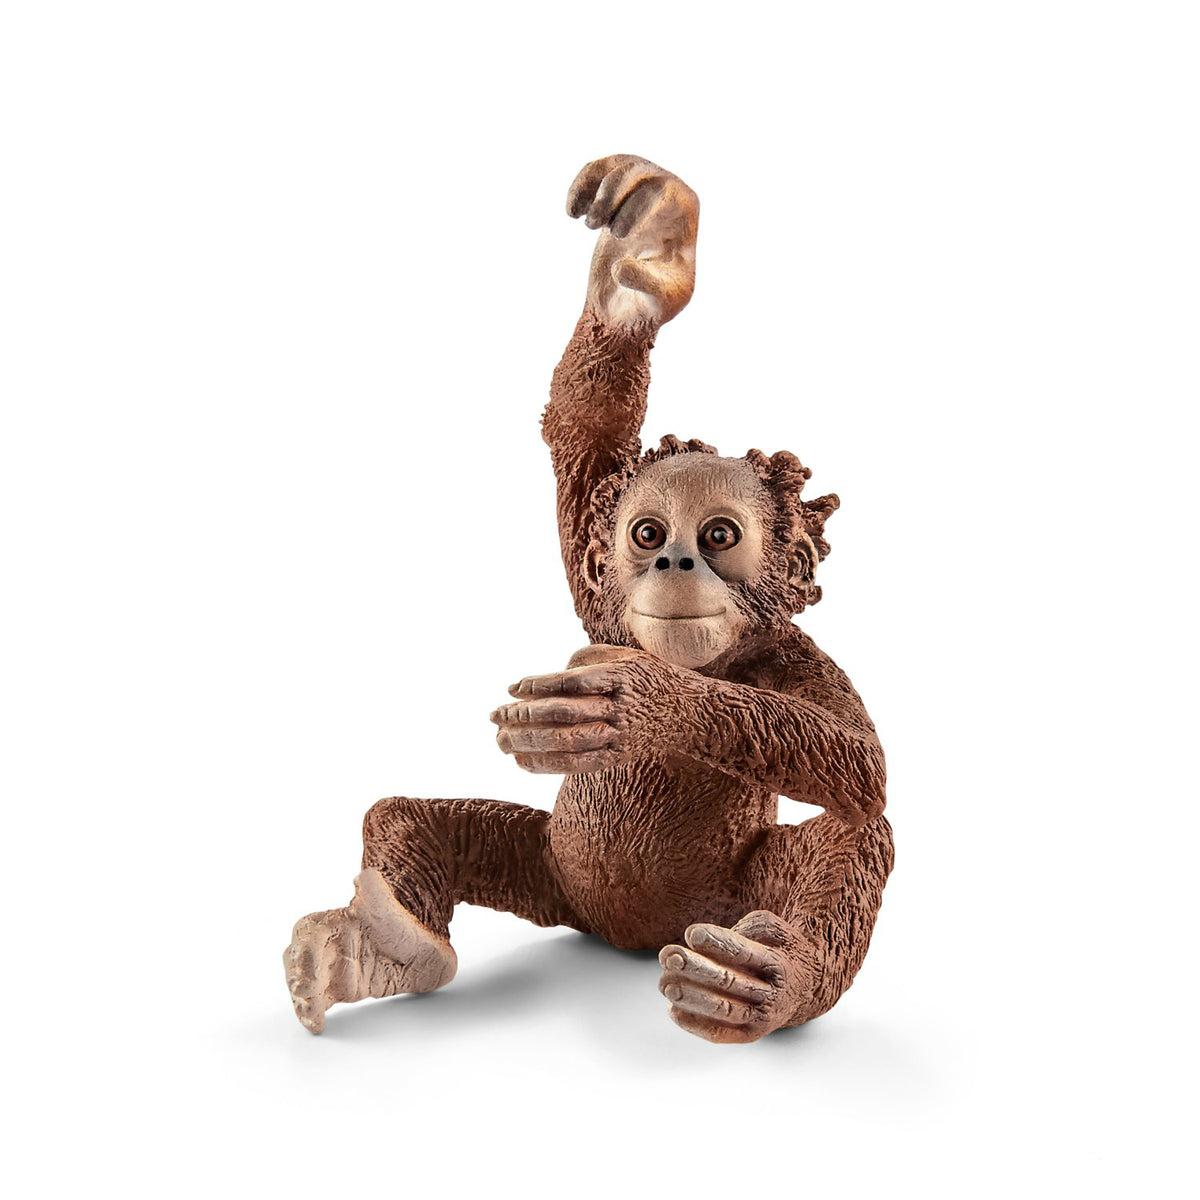 Schleich 14776 Figurine Young Orangutan Toy